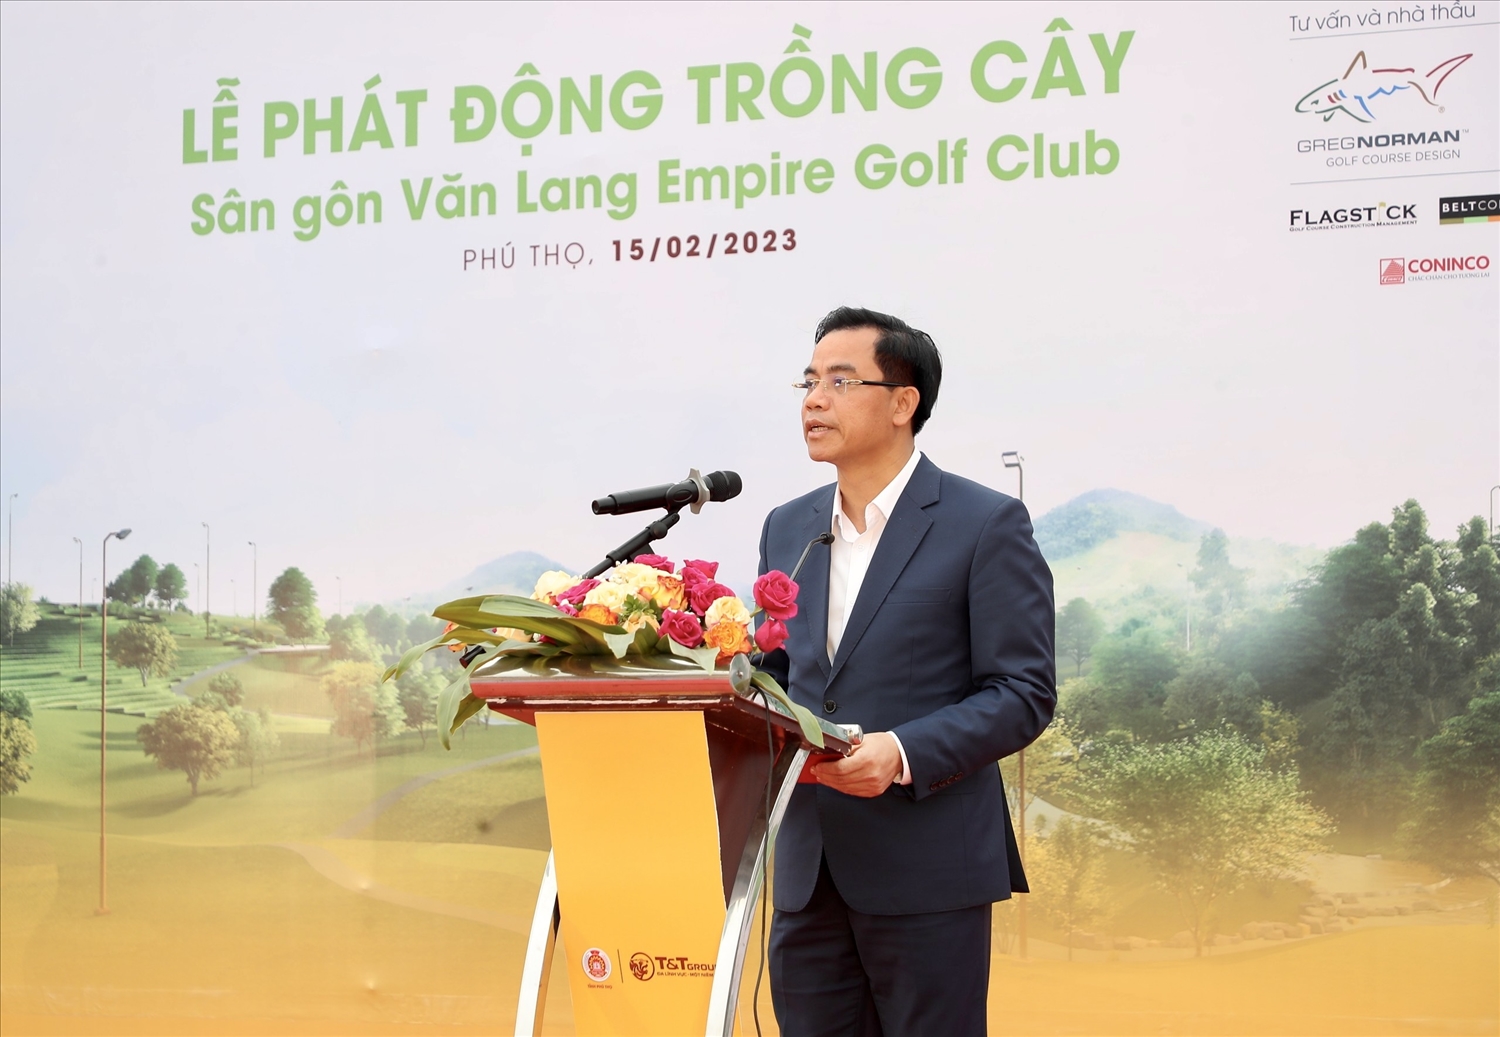 Ông Quách Hải Lý, Phó Bí thư Huyện ủy, Chủ tịch UBND huyện Tam Nông (tỉnh Phú Thọ) phát biểu tại sự kiện.